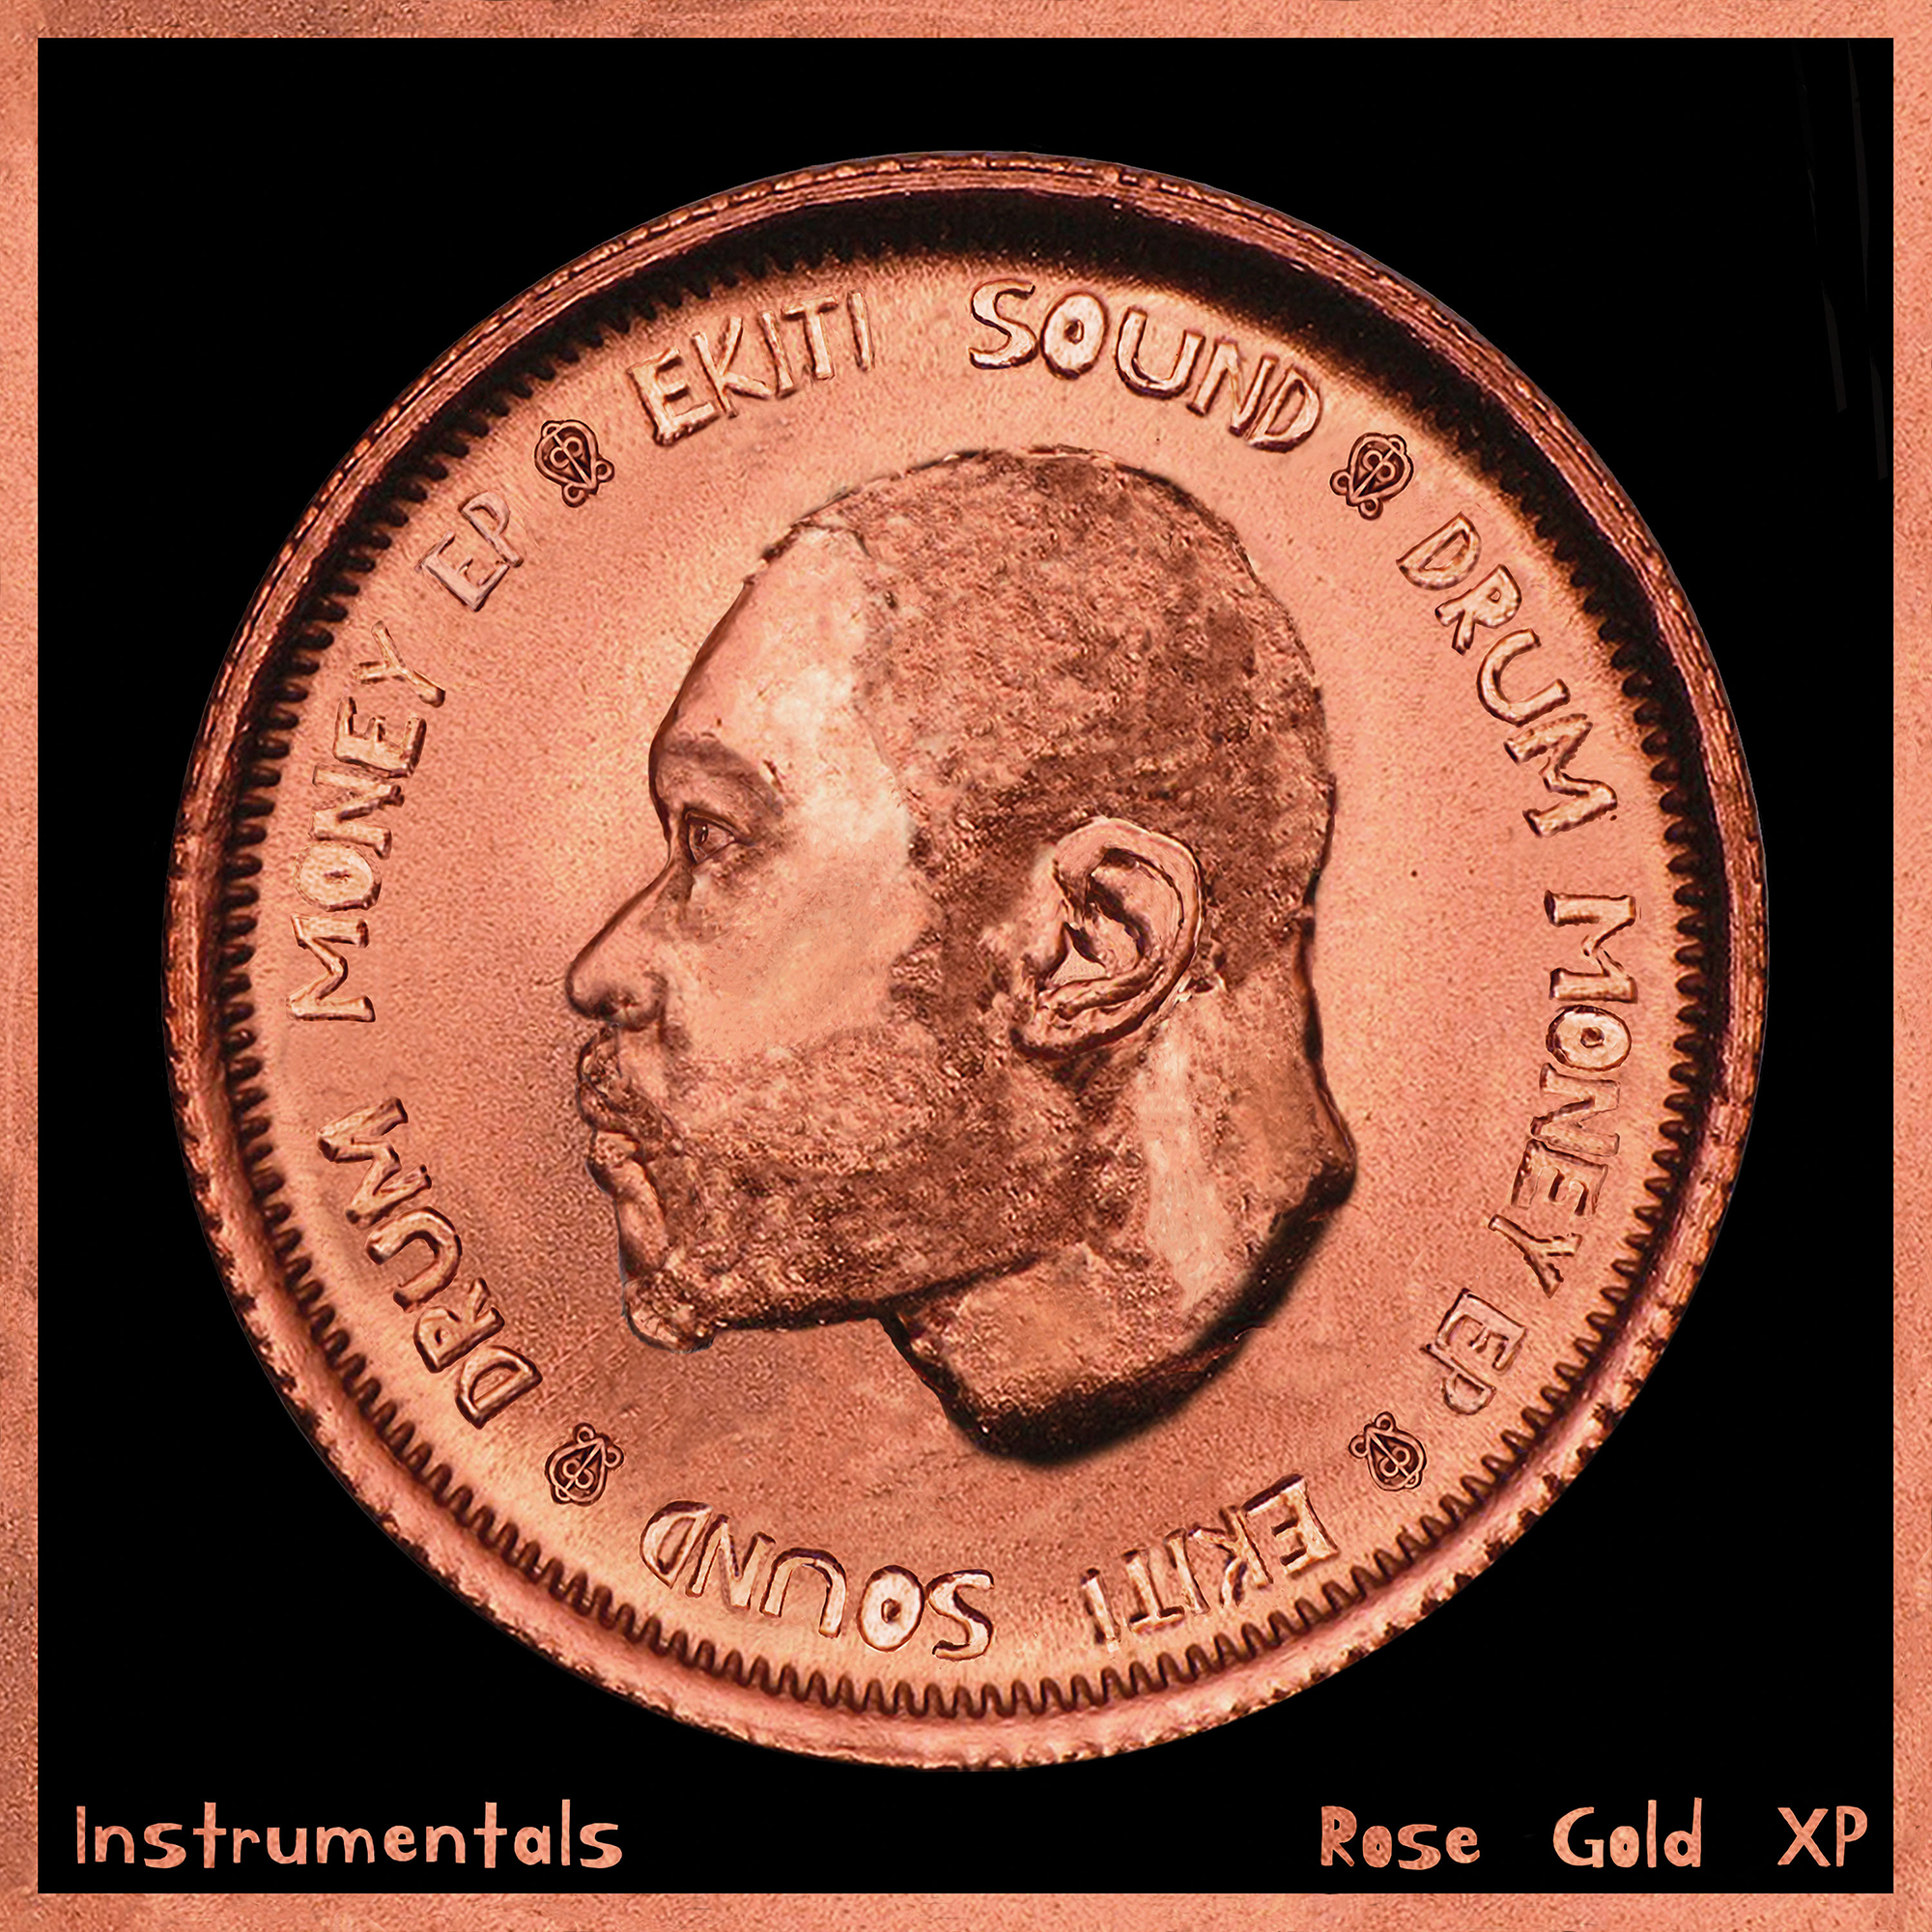 EKITI SOUND - DRUM MONEY EP (ROSE GOLD XP) INSTRUMENTALS